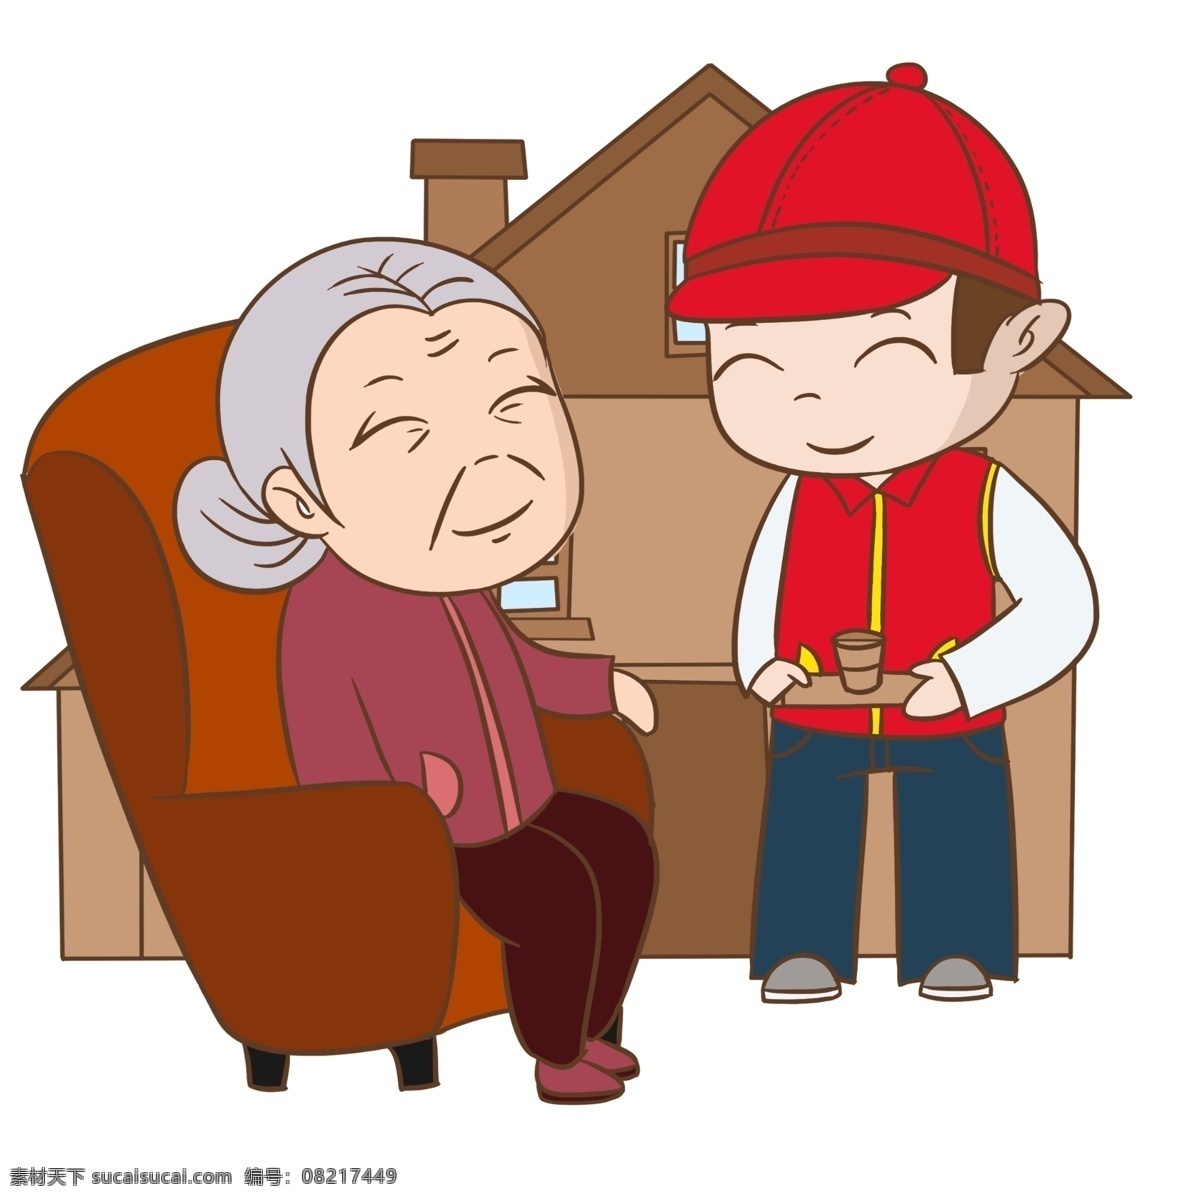 爱心 志愿者 手绘 插画 爱心志愿者 慈祥的老奶奶 红色的椅子 卡通房屋 手绘志愿者 卡通